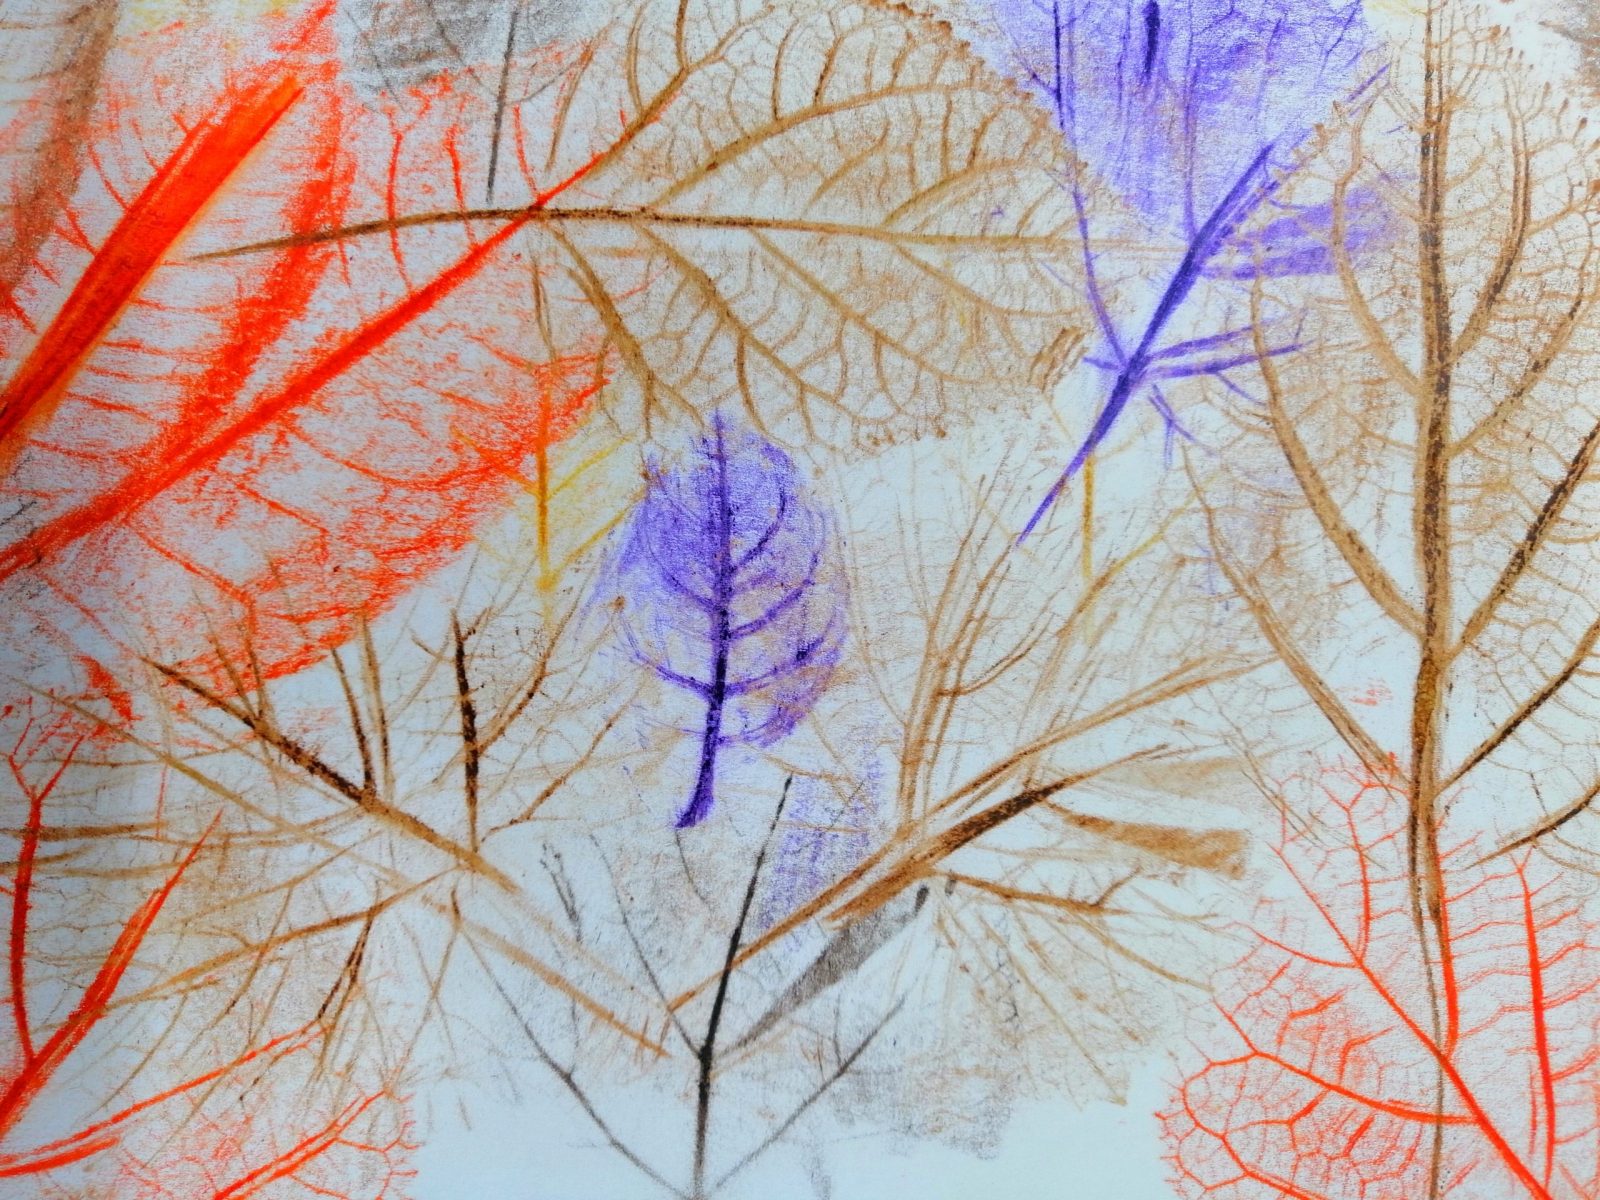 Kompozycja plastyczna struktur jesiennych liści w układzie abstrakcyjnym. Praca wykonana w technice frotażu z użyciem barw ciepłych i brązowych.